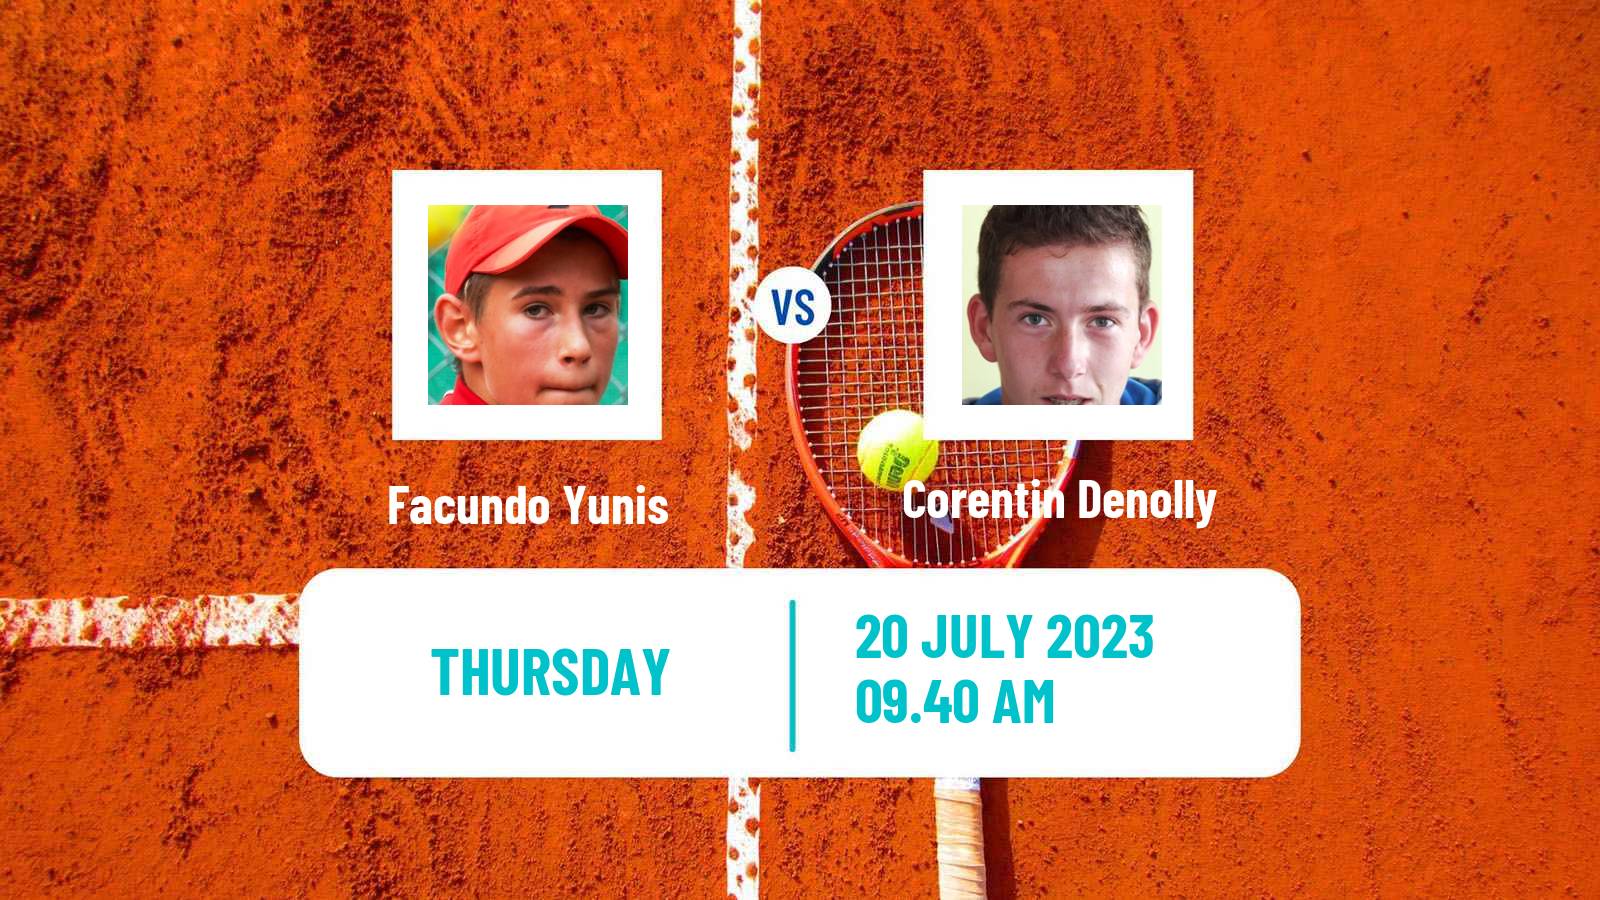 Tennis ITF M15 Uslar Men Facundo Yunis - Corentin Denolly